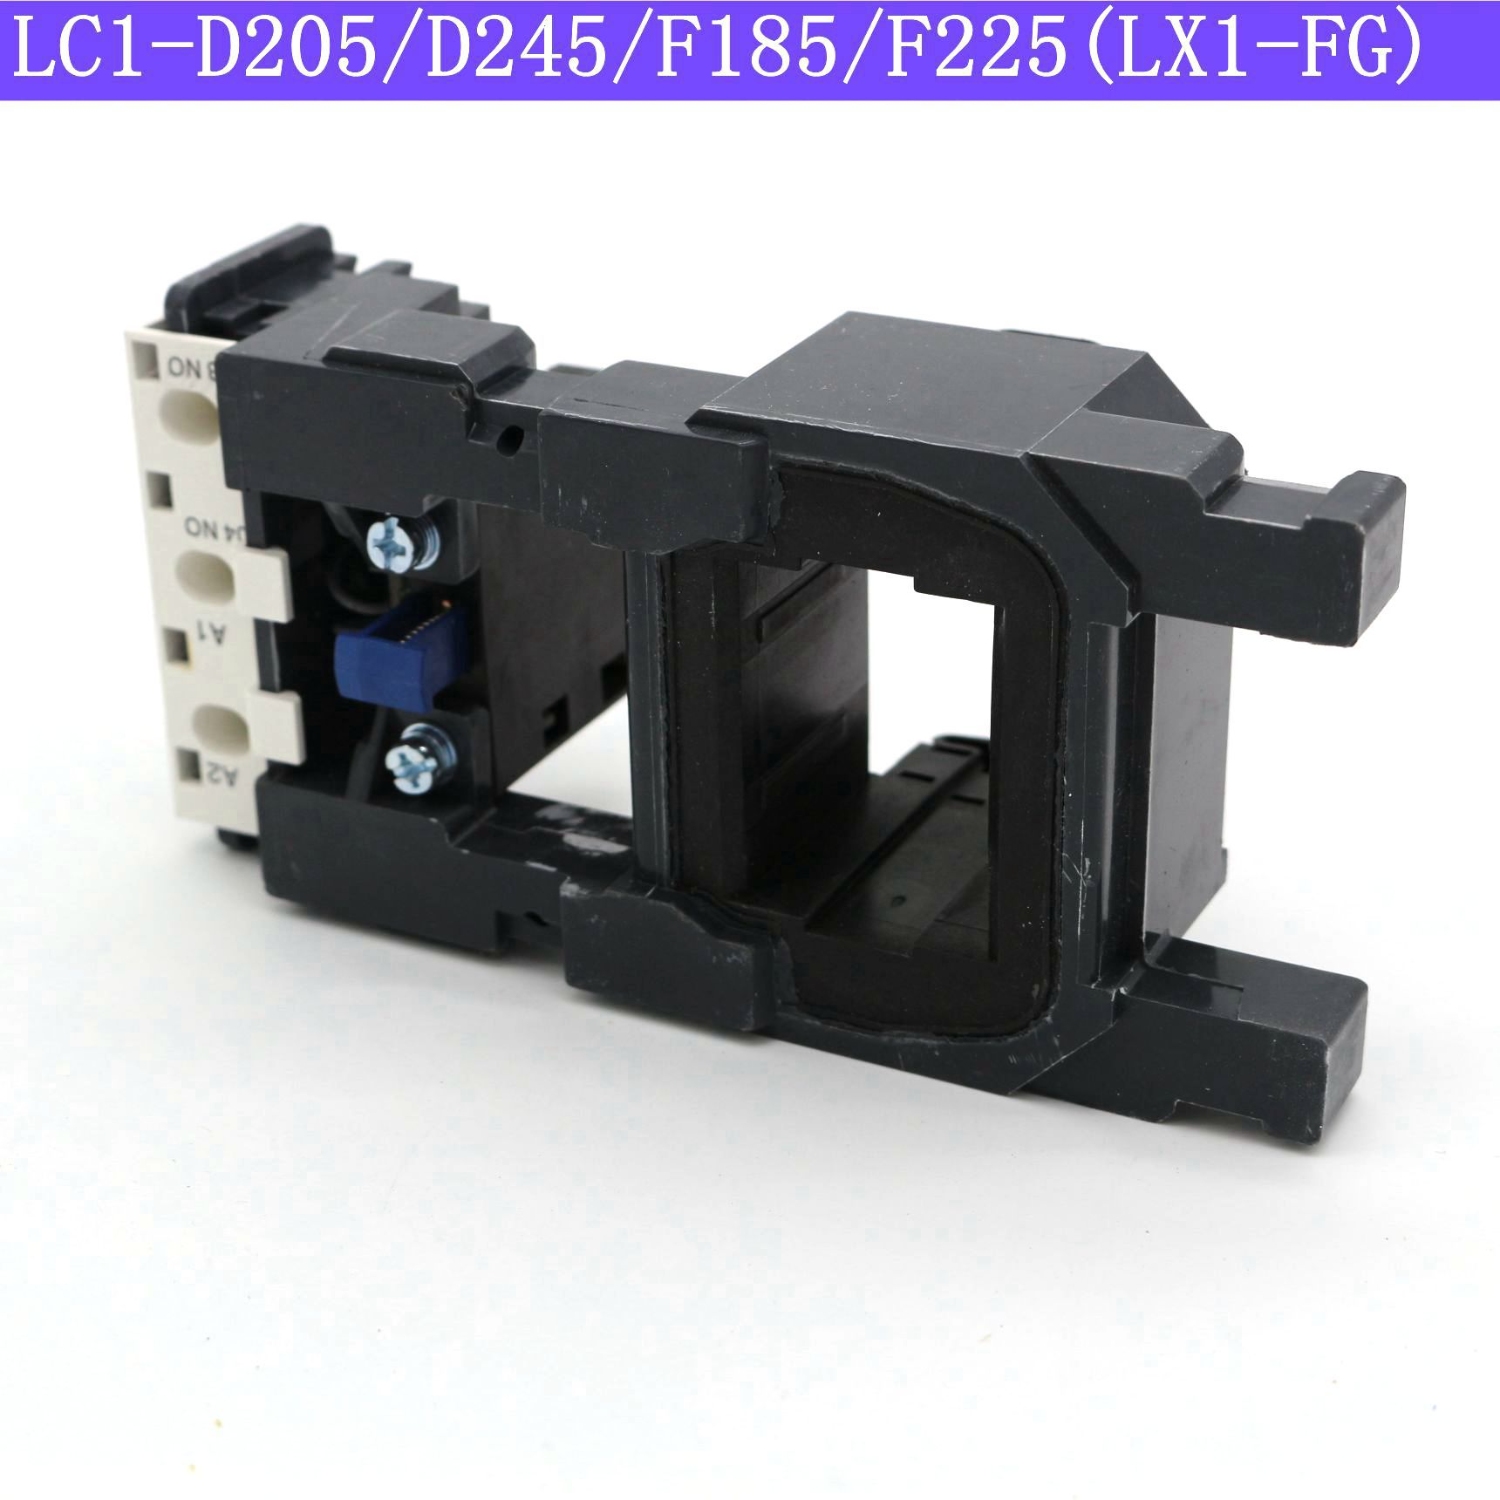 Cuộn hút của khởi động từ, contactor coil LX1-FG/F185/F225 (LC1-D205/D245)  220V 380V